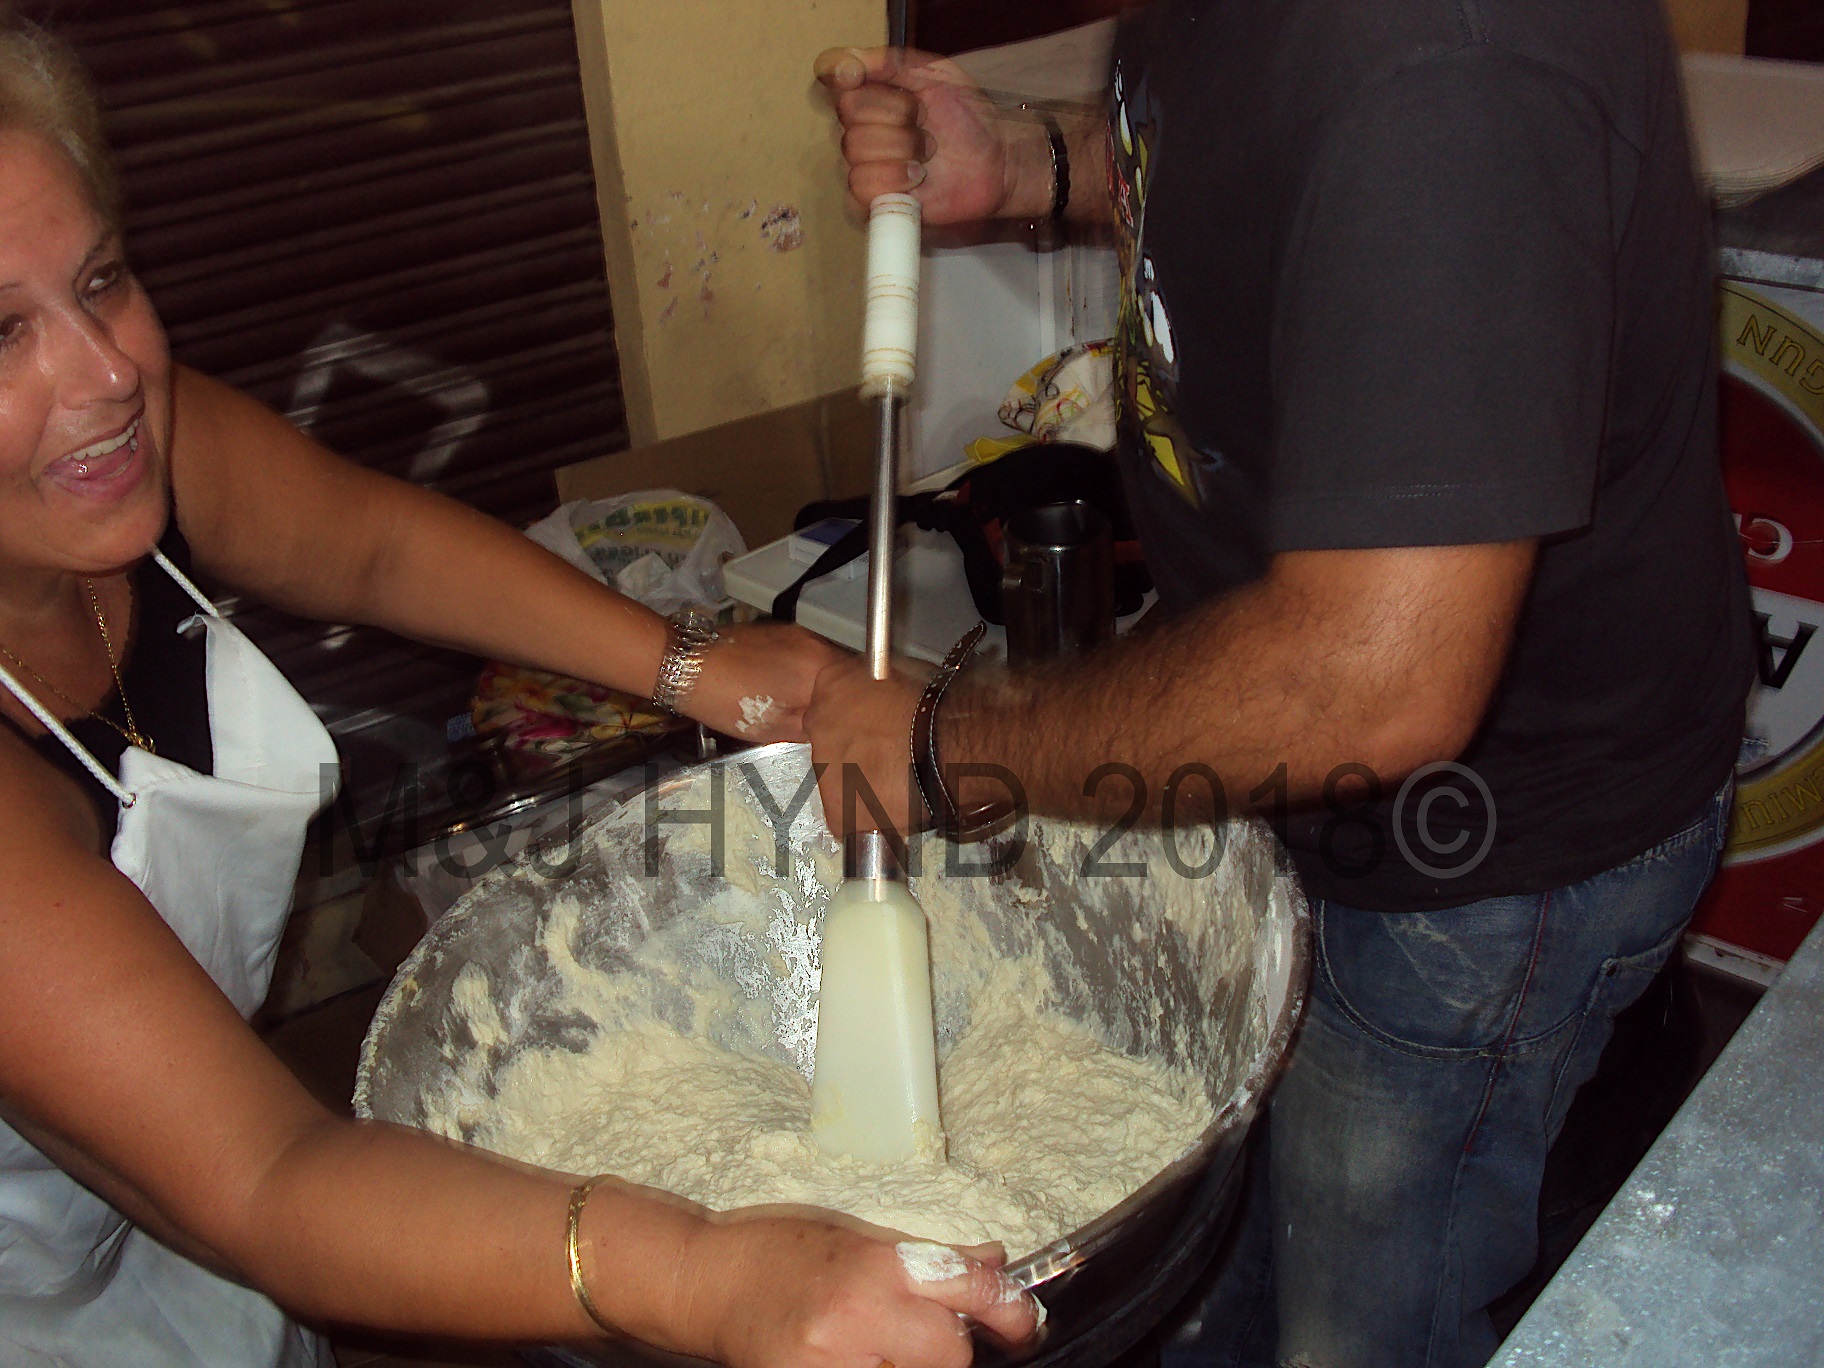 making Churros, to feed the faithful during Nit de la Roa